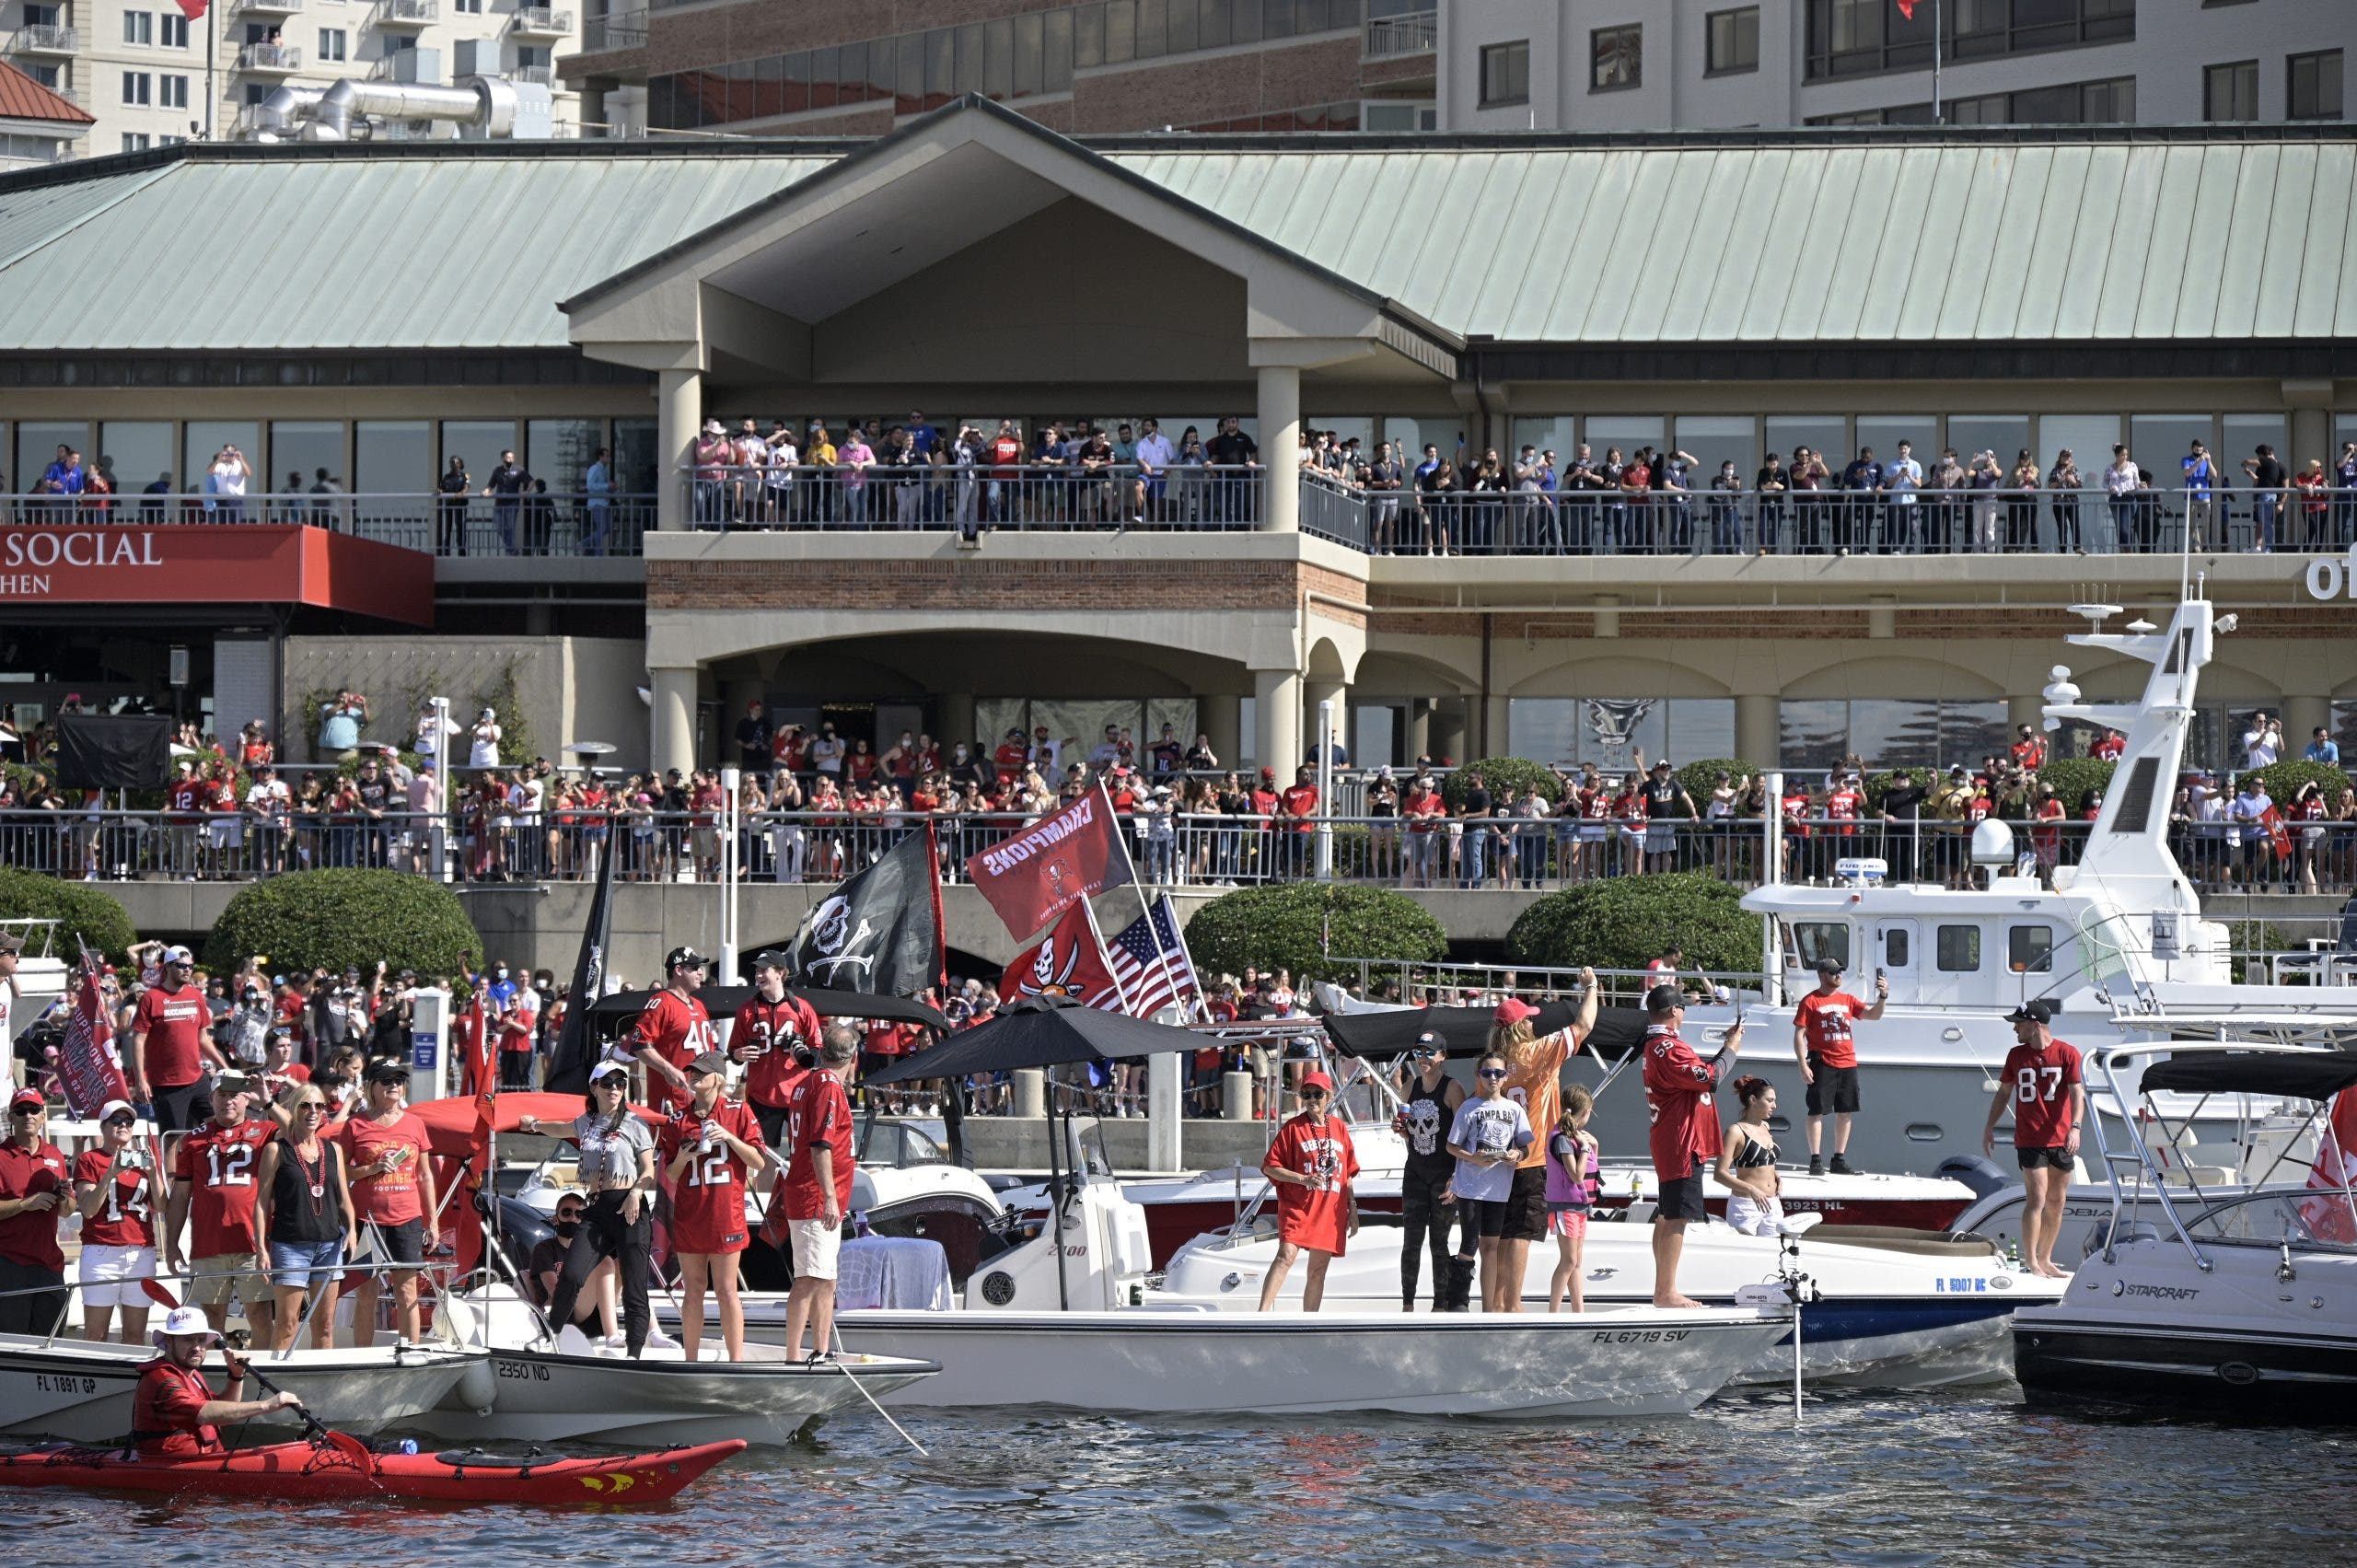 Buccaneers celebran su título con desfile en botes y sin mascarillas